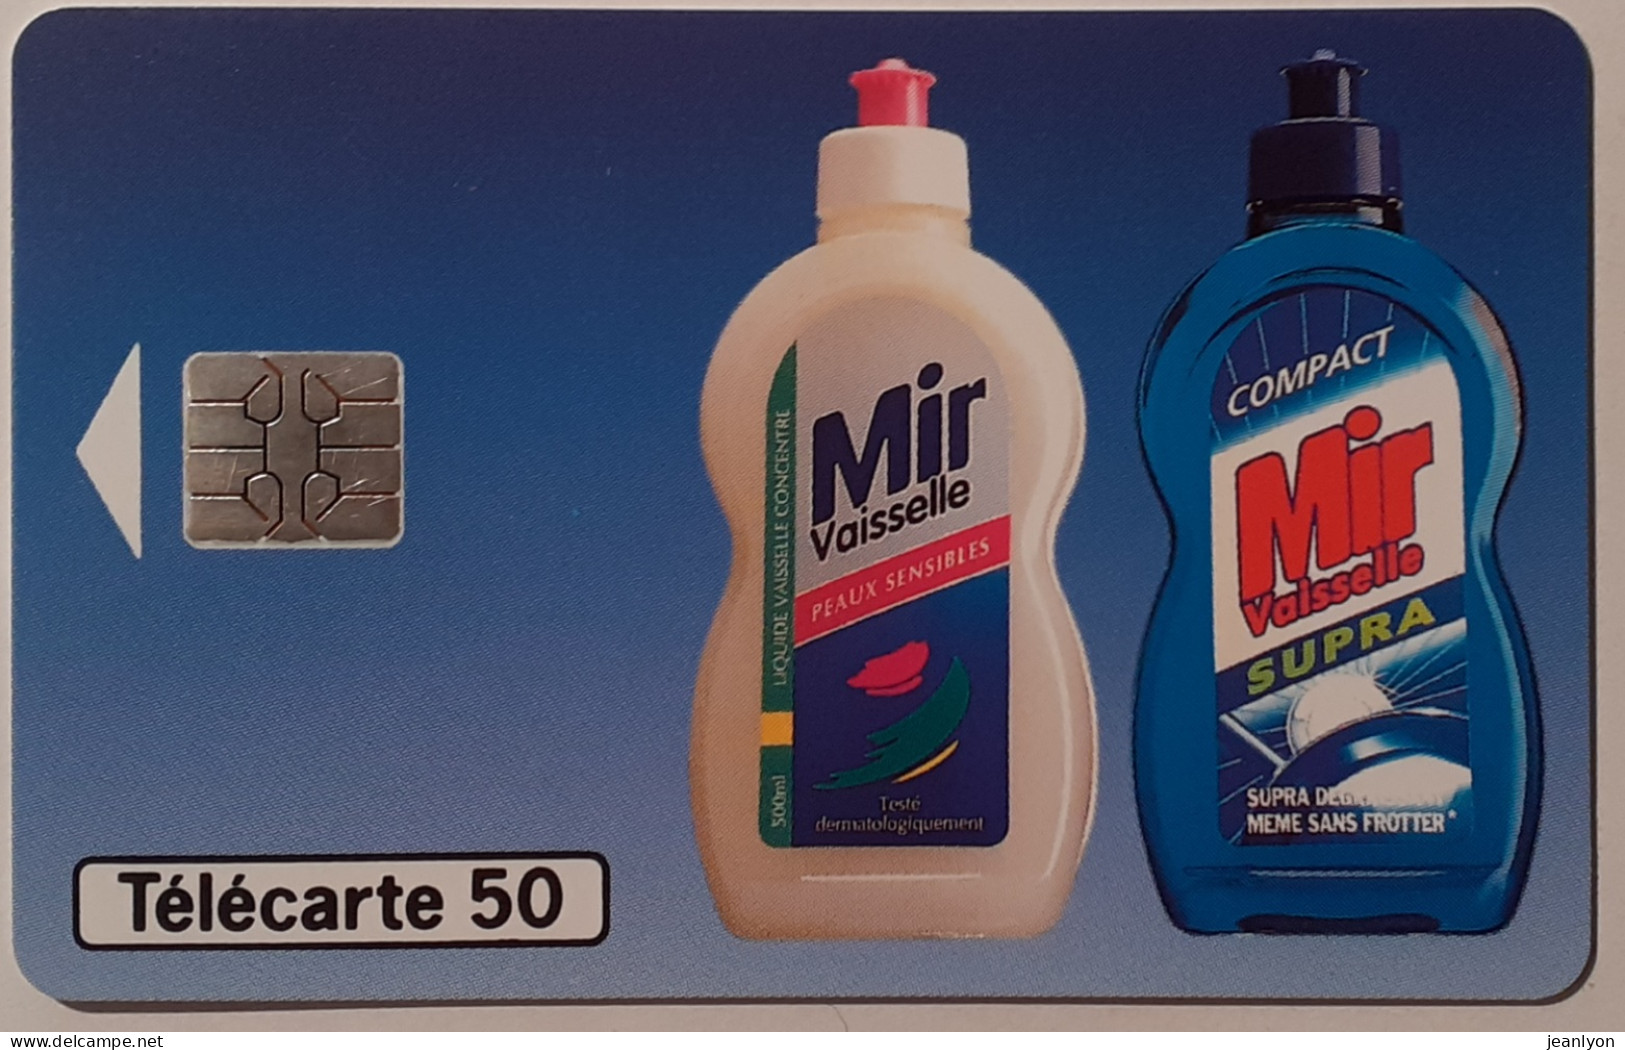 MIR VAISSELLE - Bidon Liquide Vaisselle - Télécarte 50 Unités Utilisée / Tirage 8000 Exemplaires - 50 Einheiten